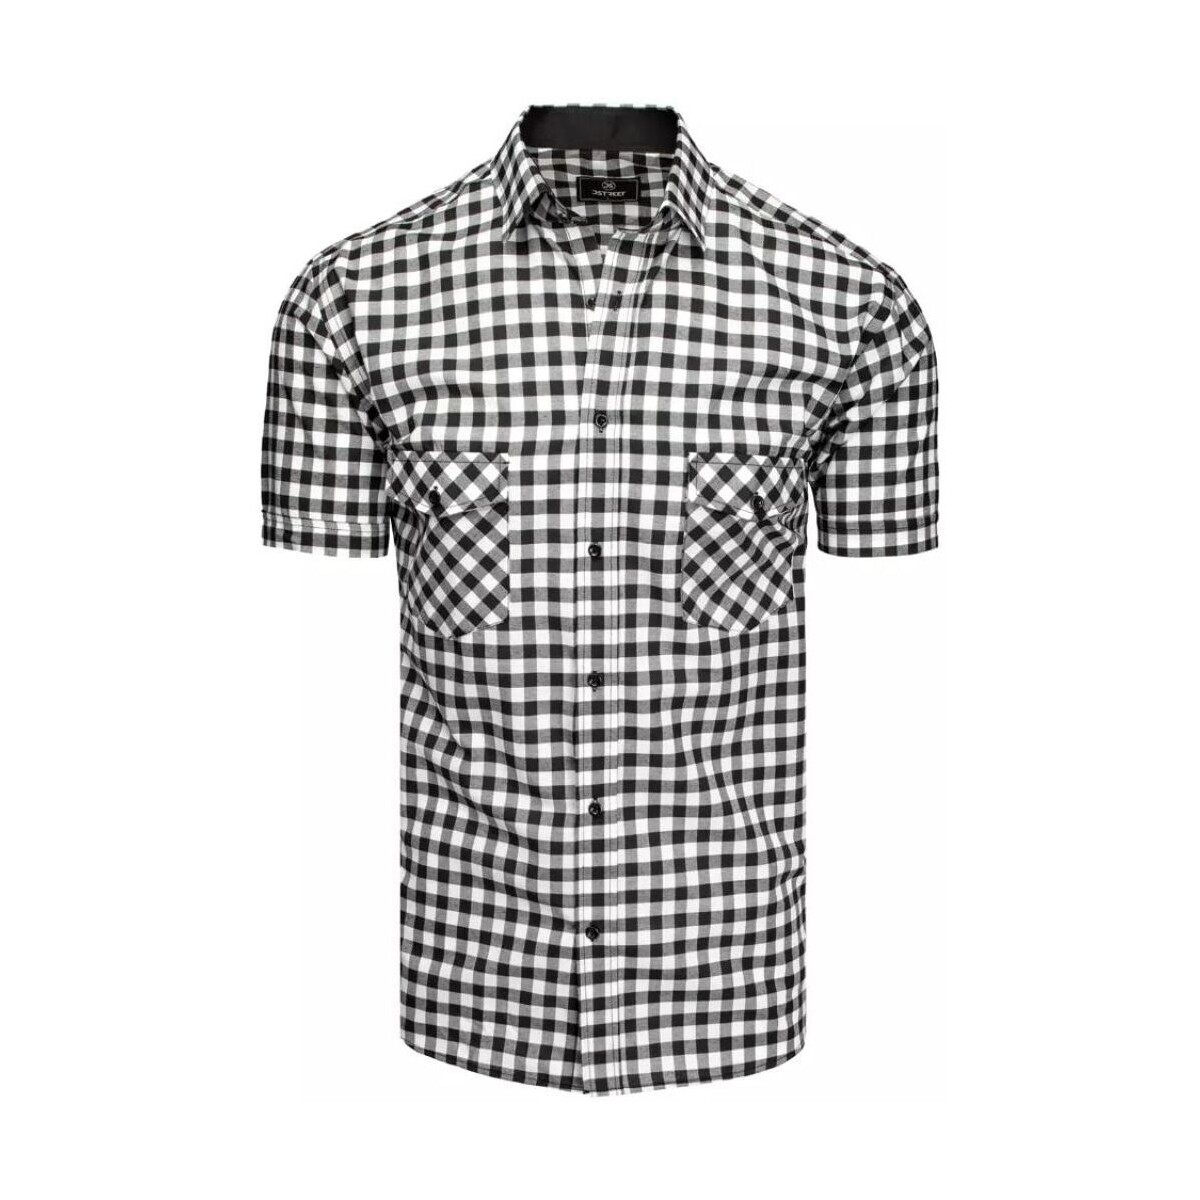 Textil Muži Košile s dlouhymi rukávy D Street Pánská košile s krátkým rukávem Nalnt černo-bílá Bílá